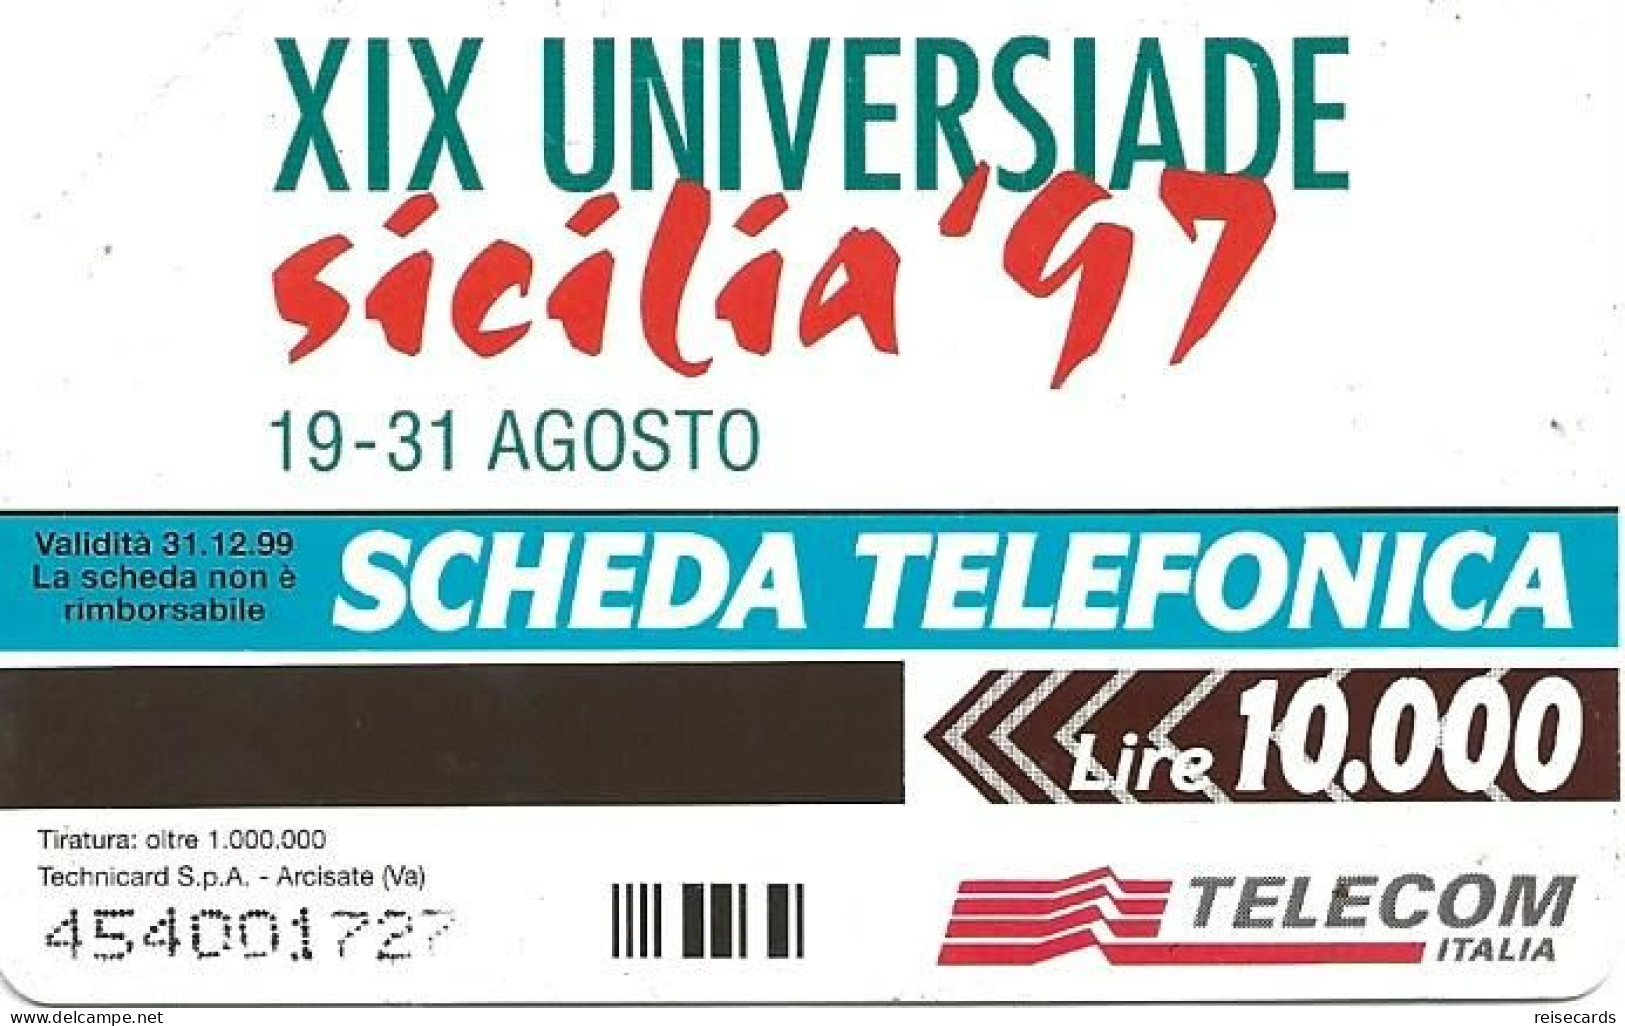 Italy: Telecom Italia - XIX Universiade Sicilia '97, Archimede - Pubbliche Pubblicitarie